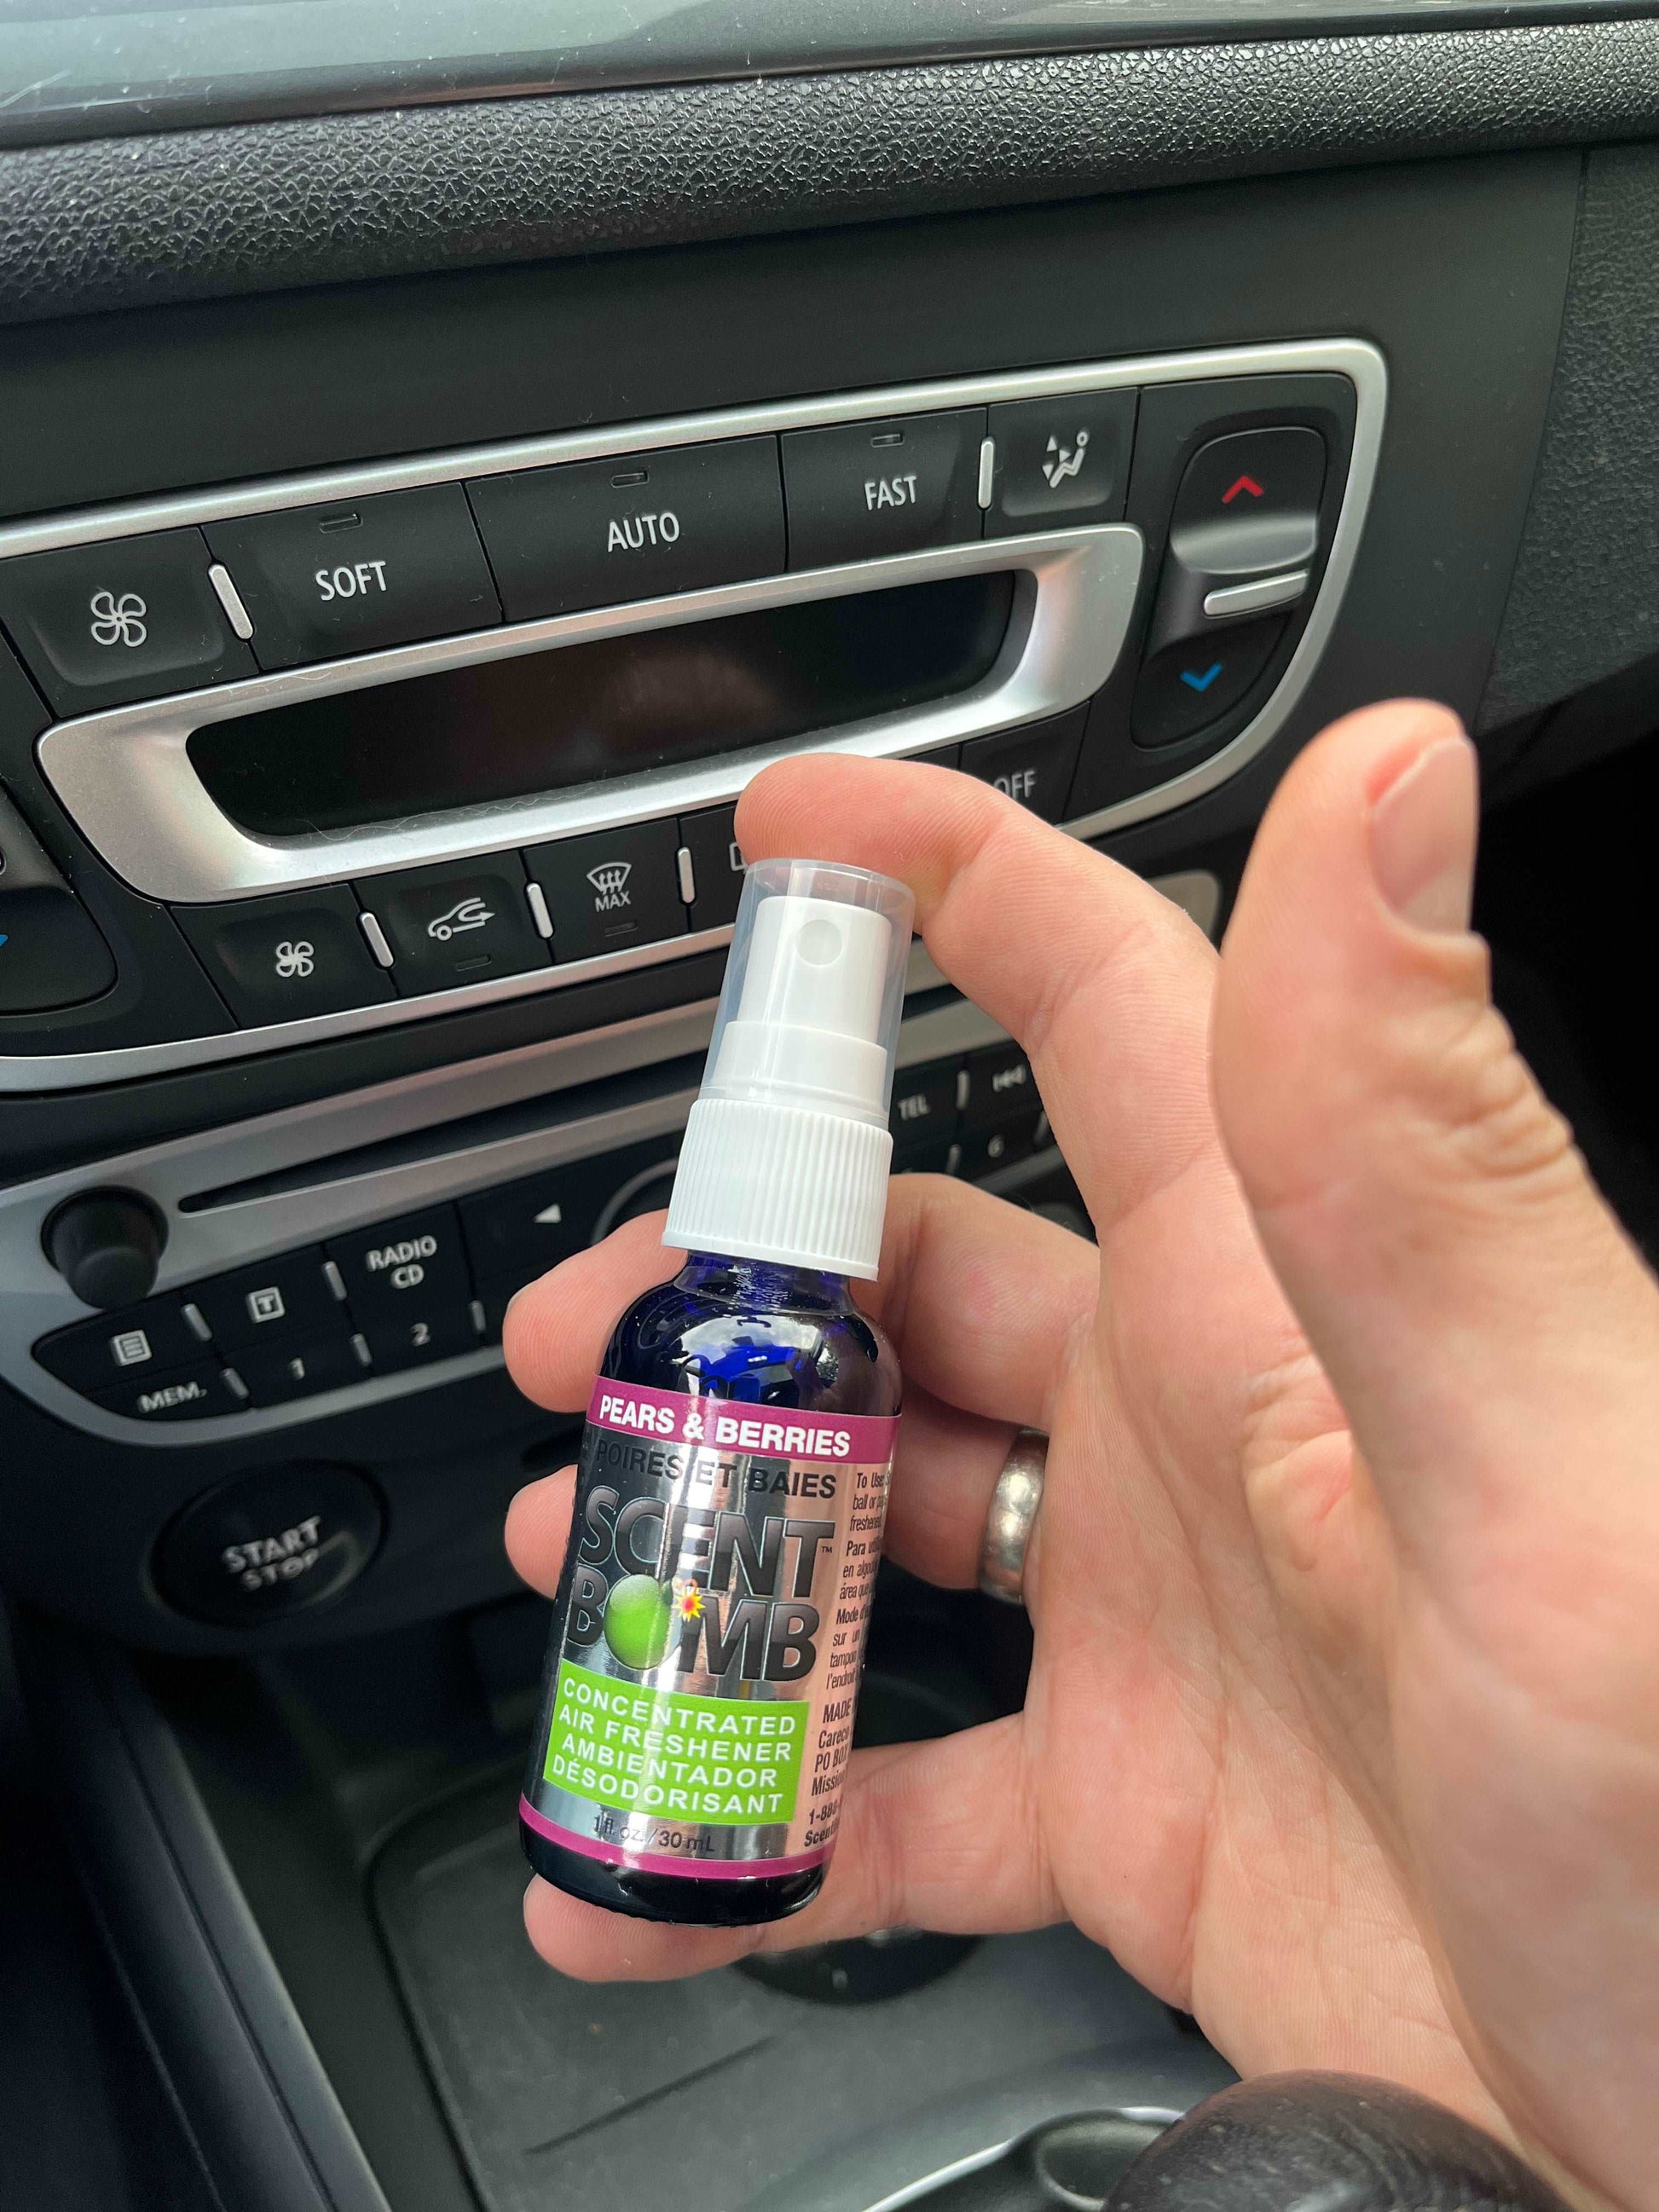 Scent Bomb Auto Parfum Spray - Pears & Berries